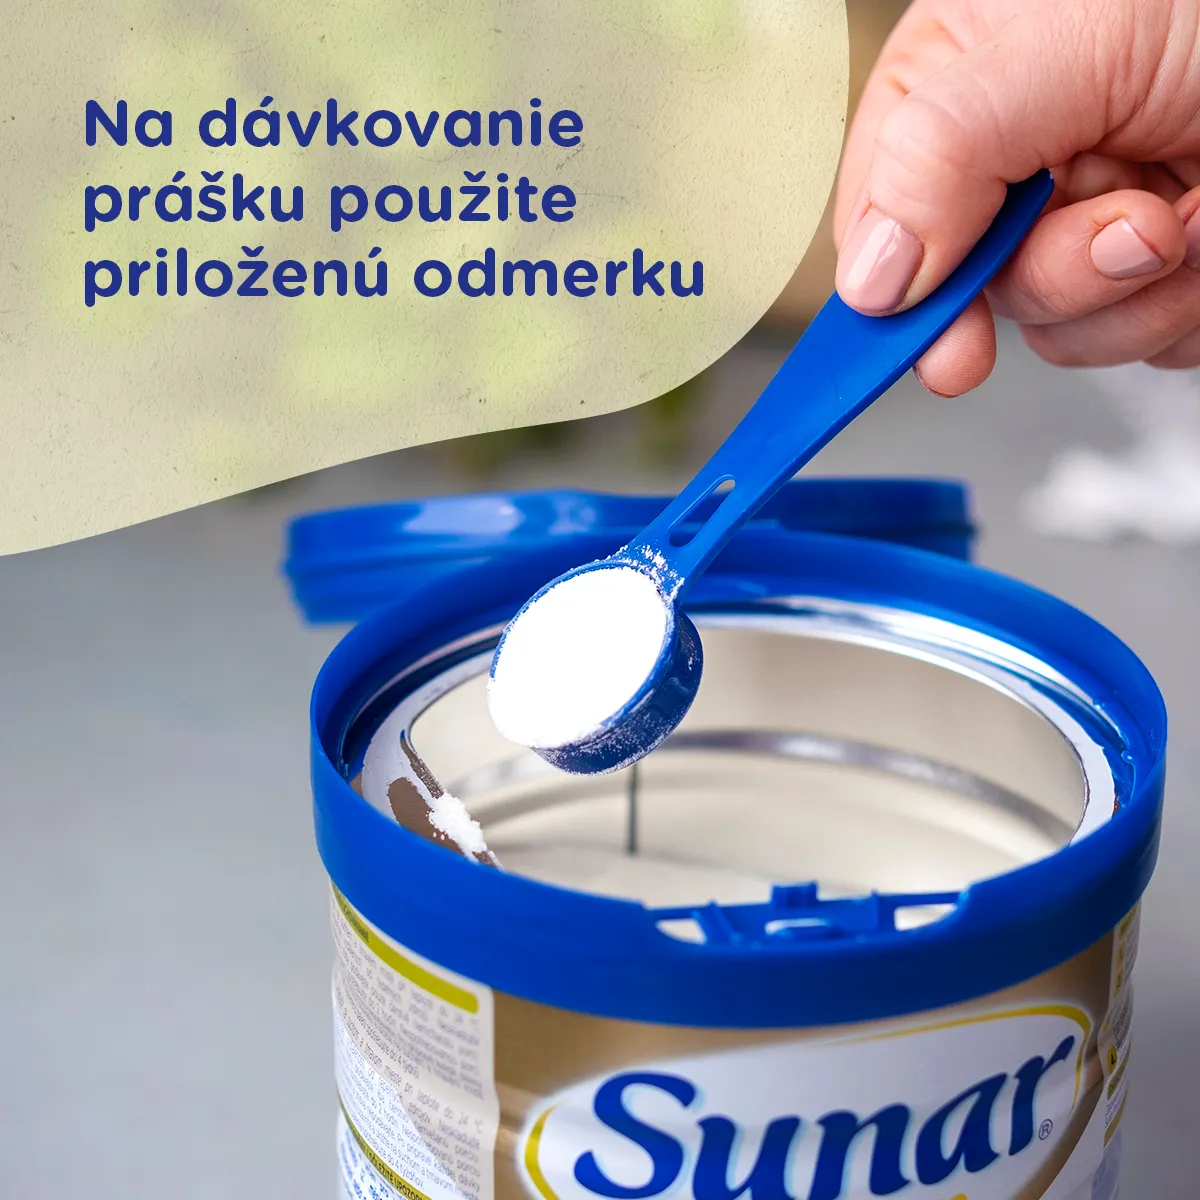 Sunar Premium 2 1×700 g, dojčenské mlieko, od 6. mesiaca